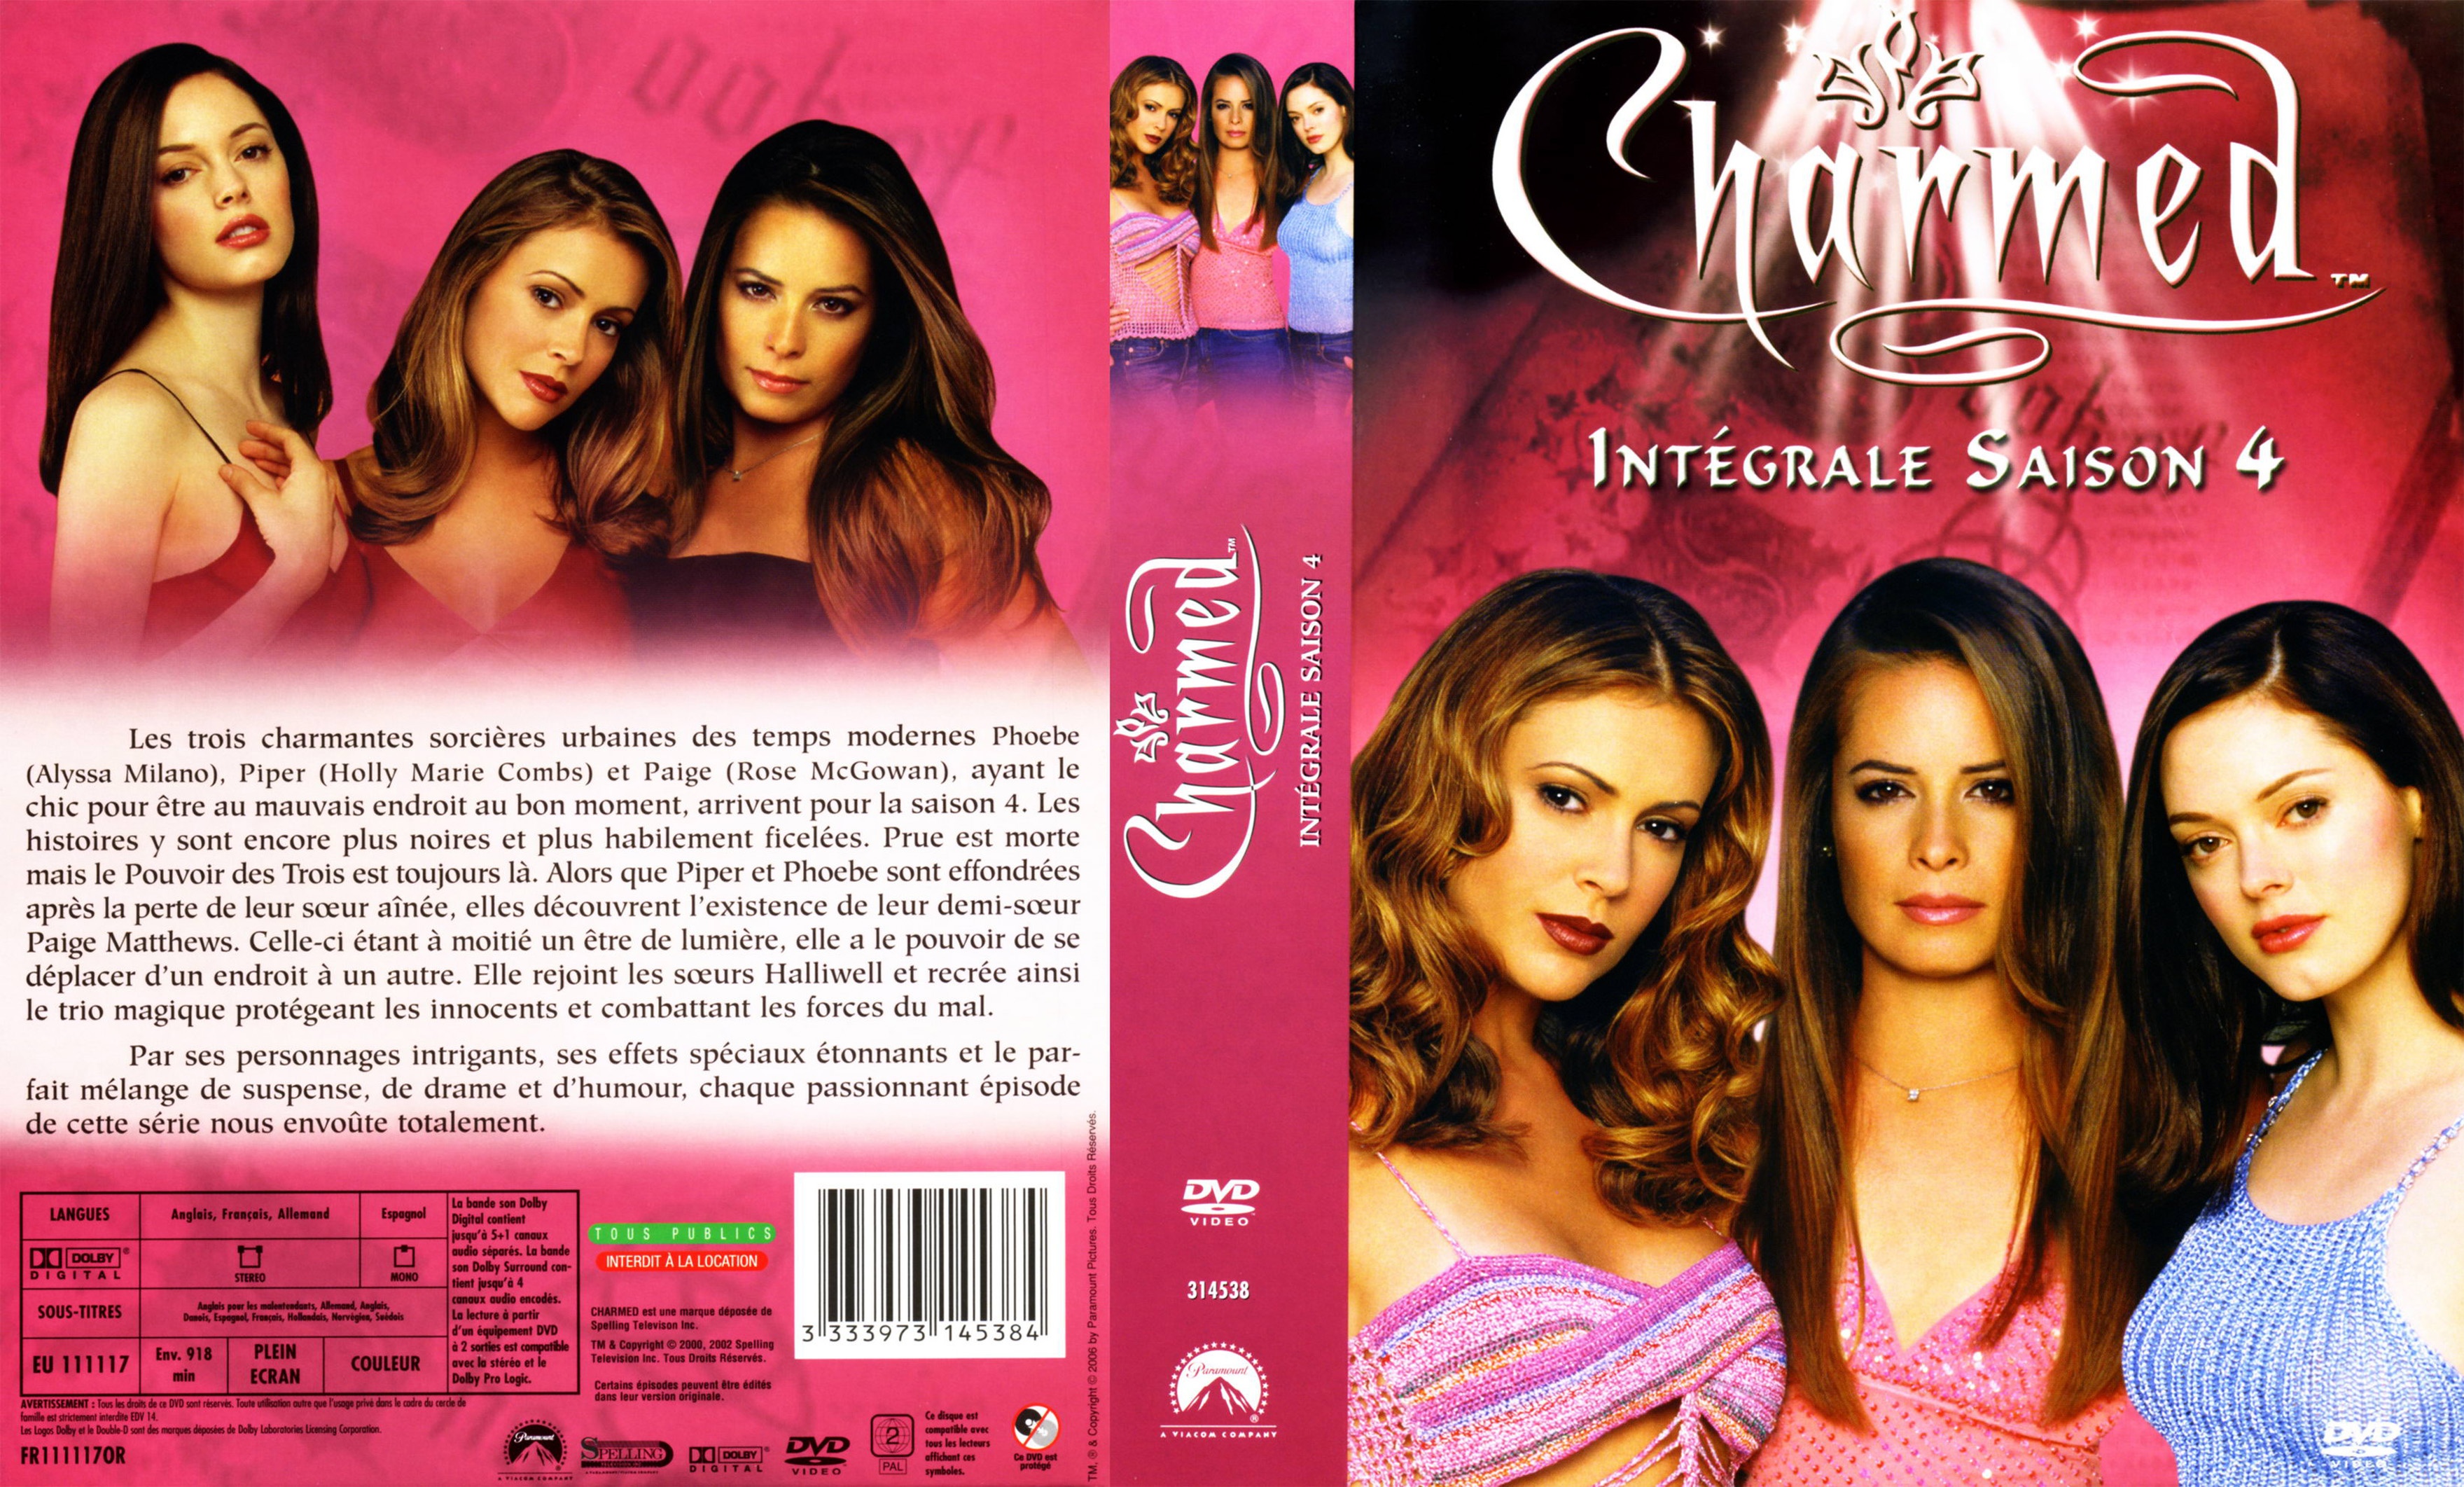 Jaquette DVD Charmed Saison 4 COFFRET v2